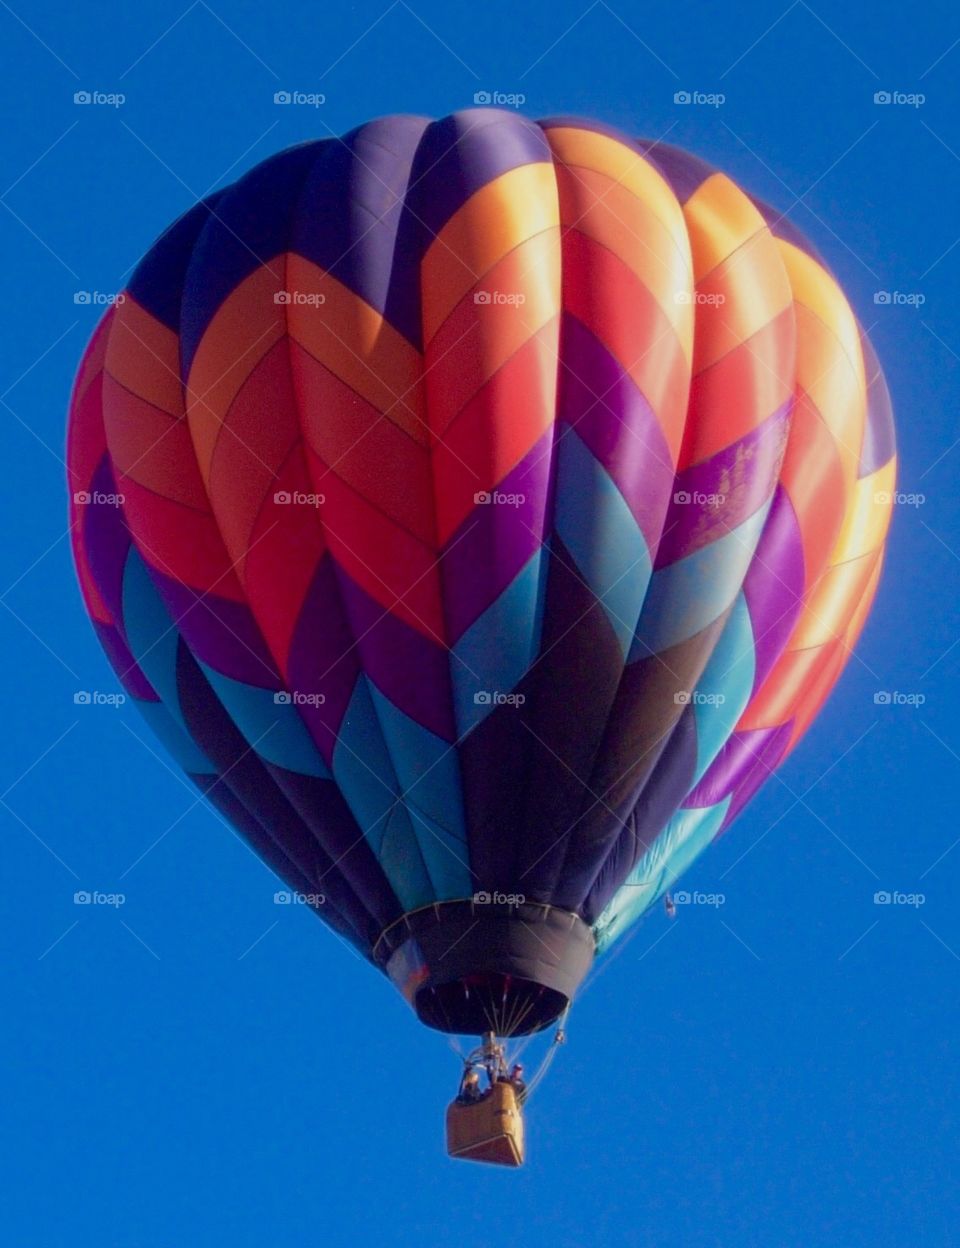 Hot Air Balloon, Taos, NM